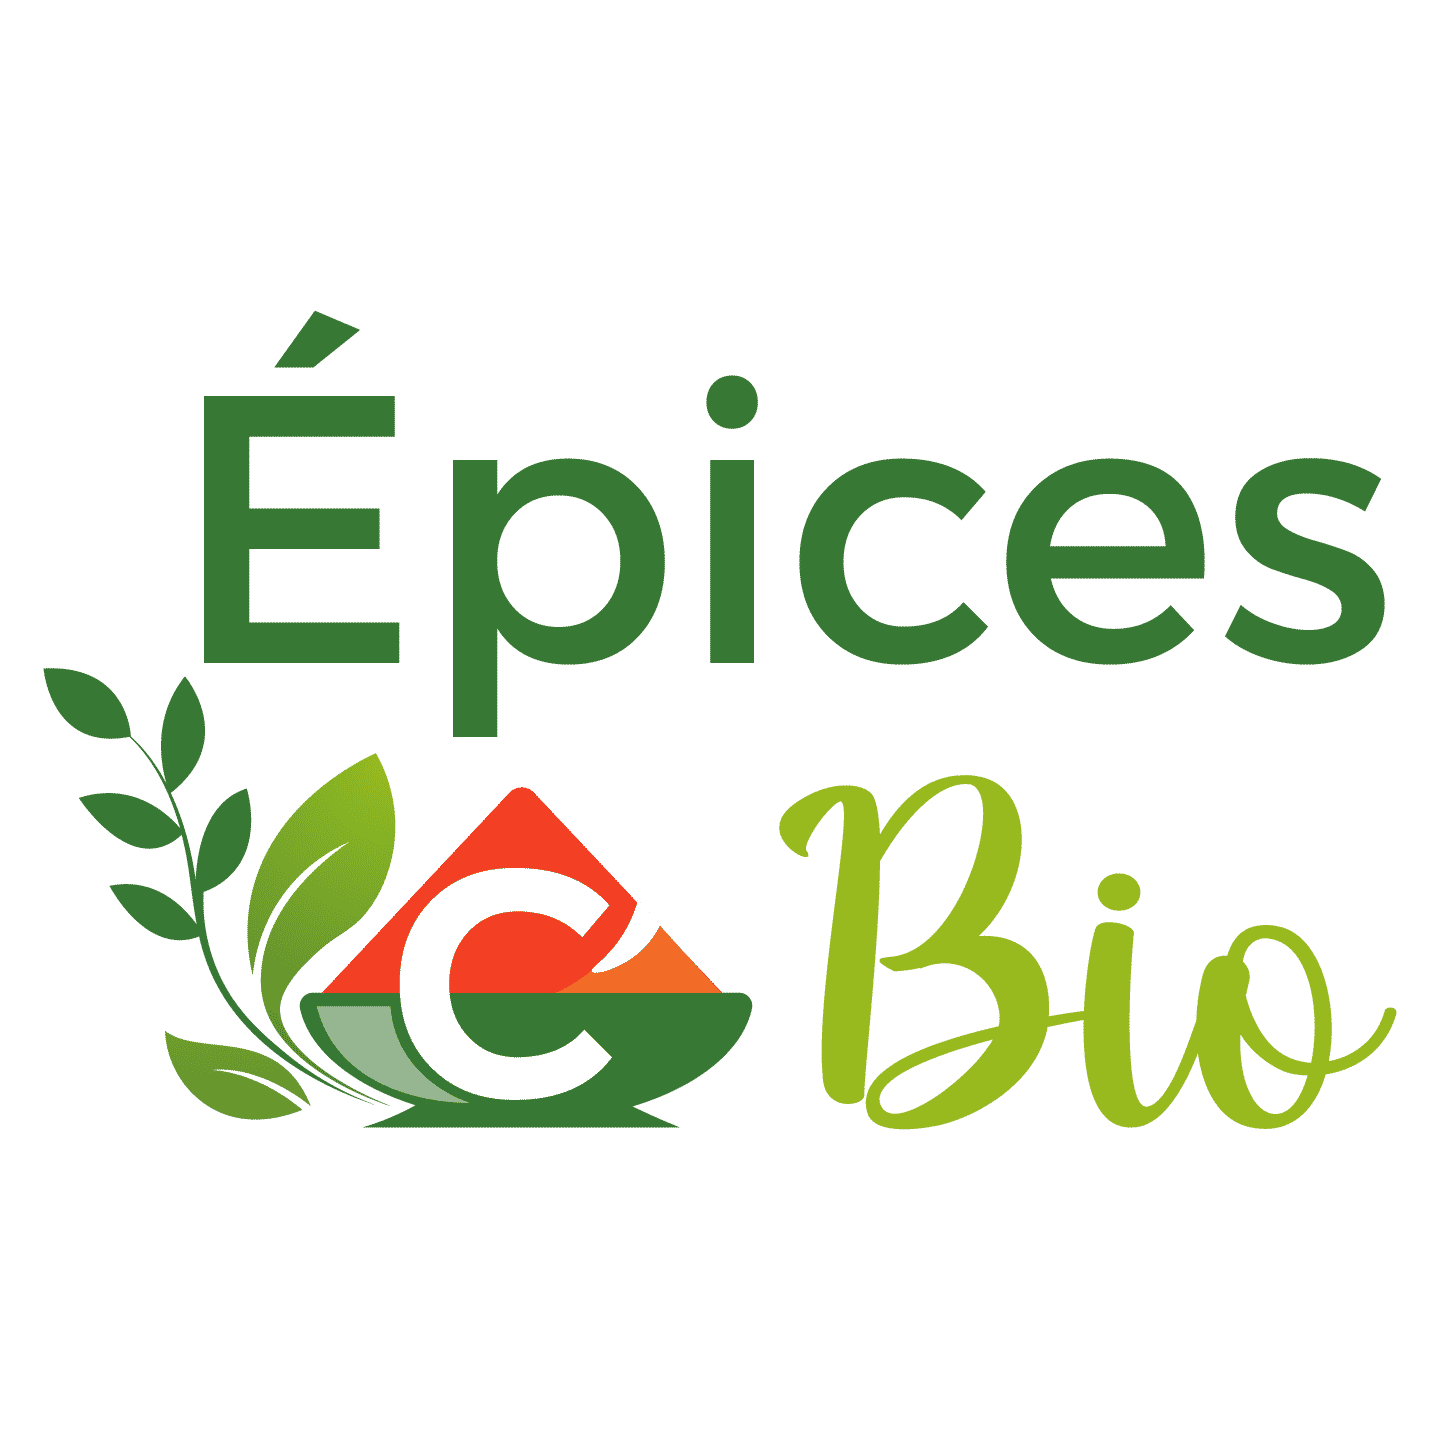 Vente d'épices naturelles ou bio en ligne - Épices C' Bio